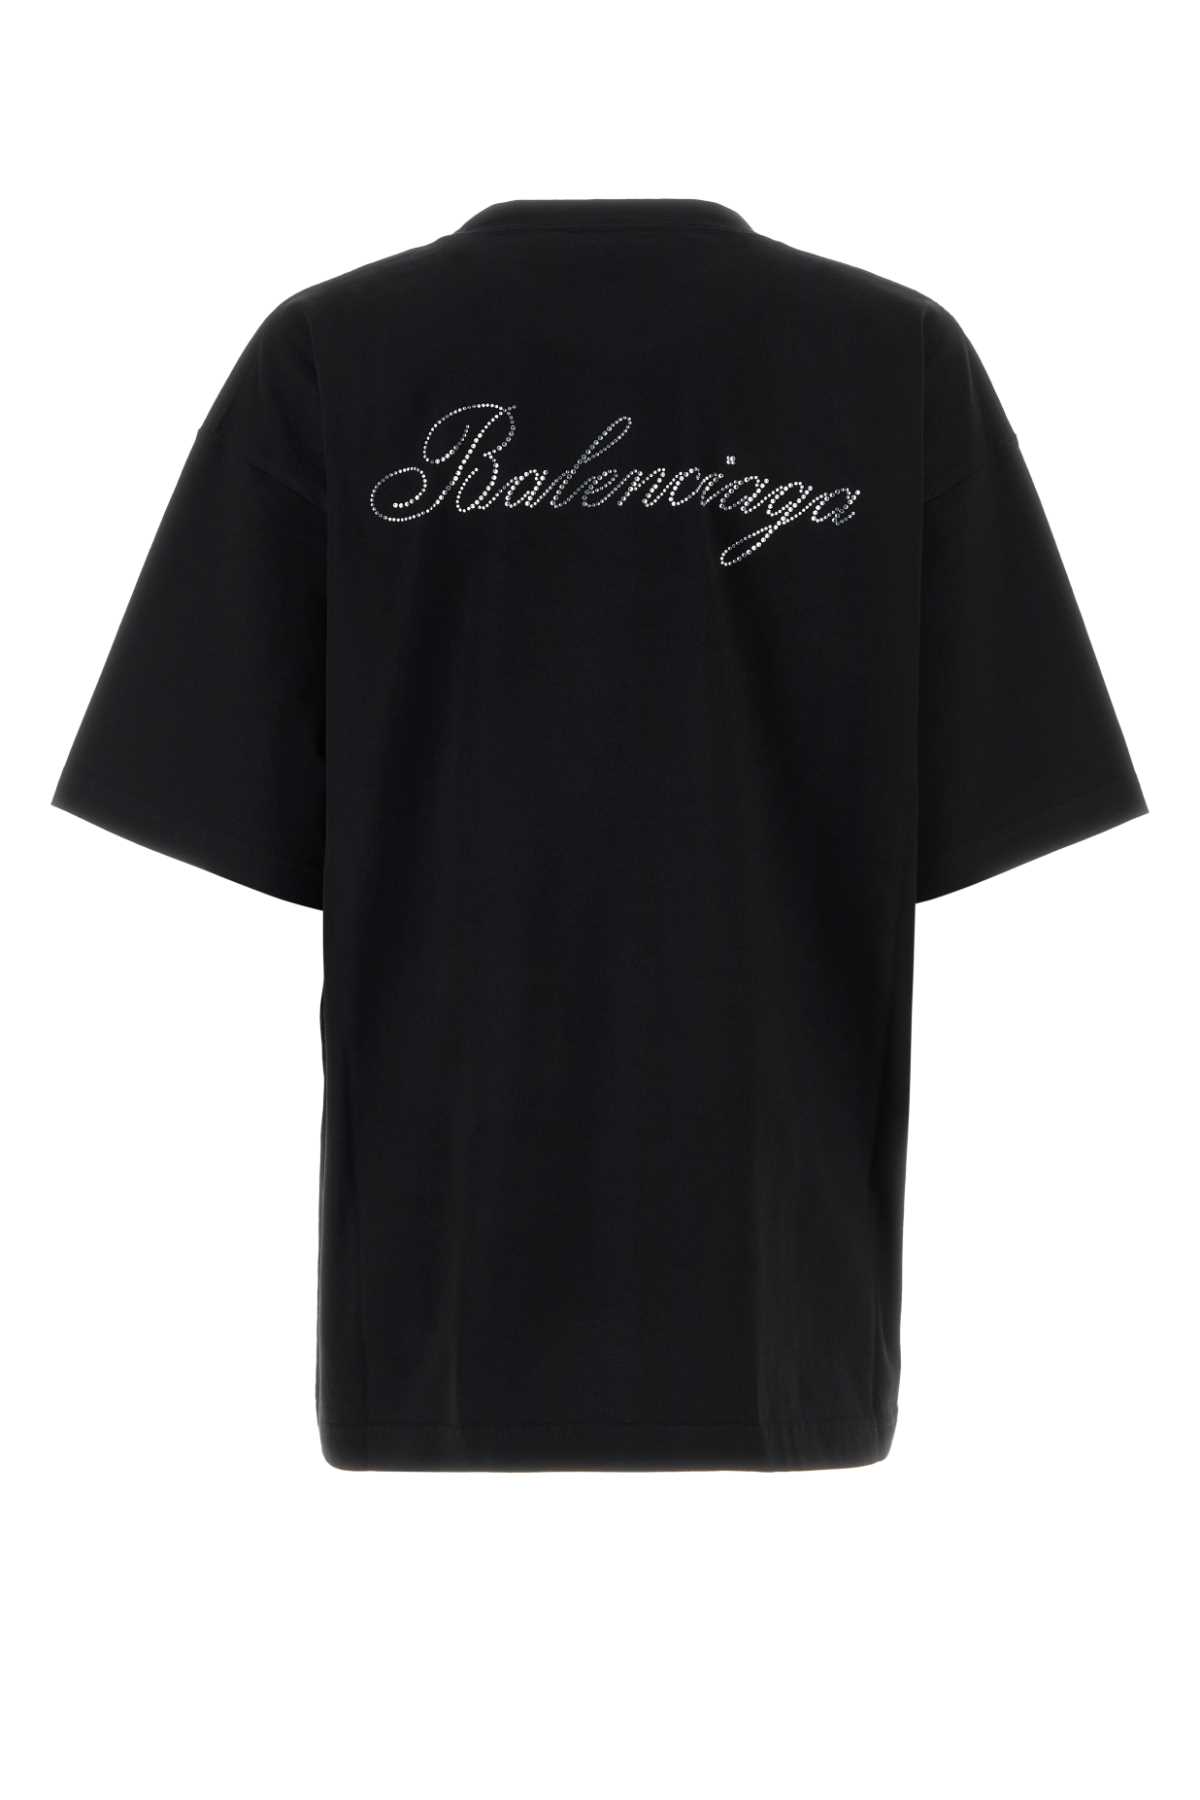 Balenciaga Black Cotton Oversize T-shirt